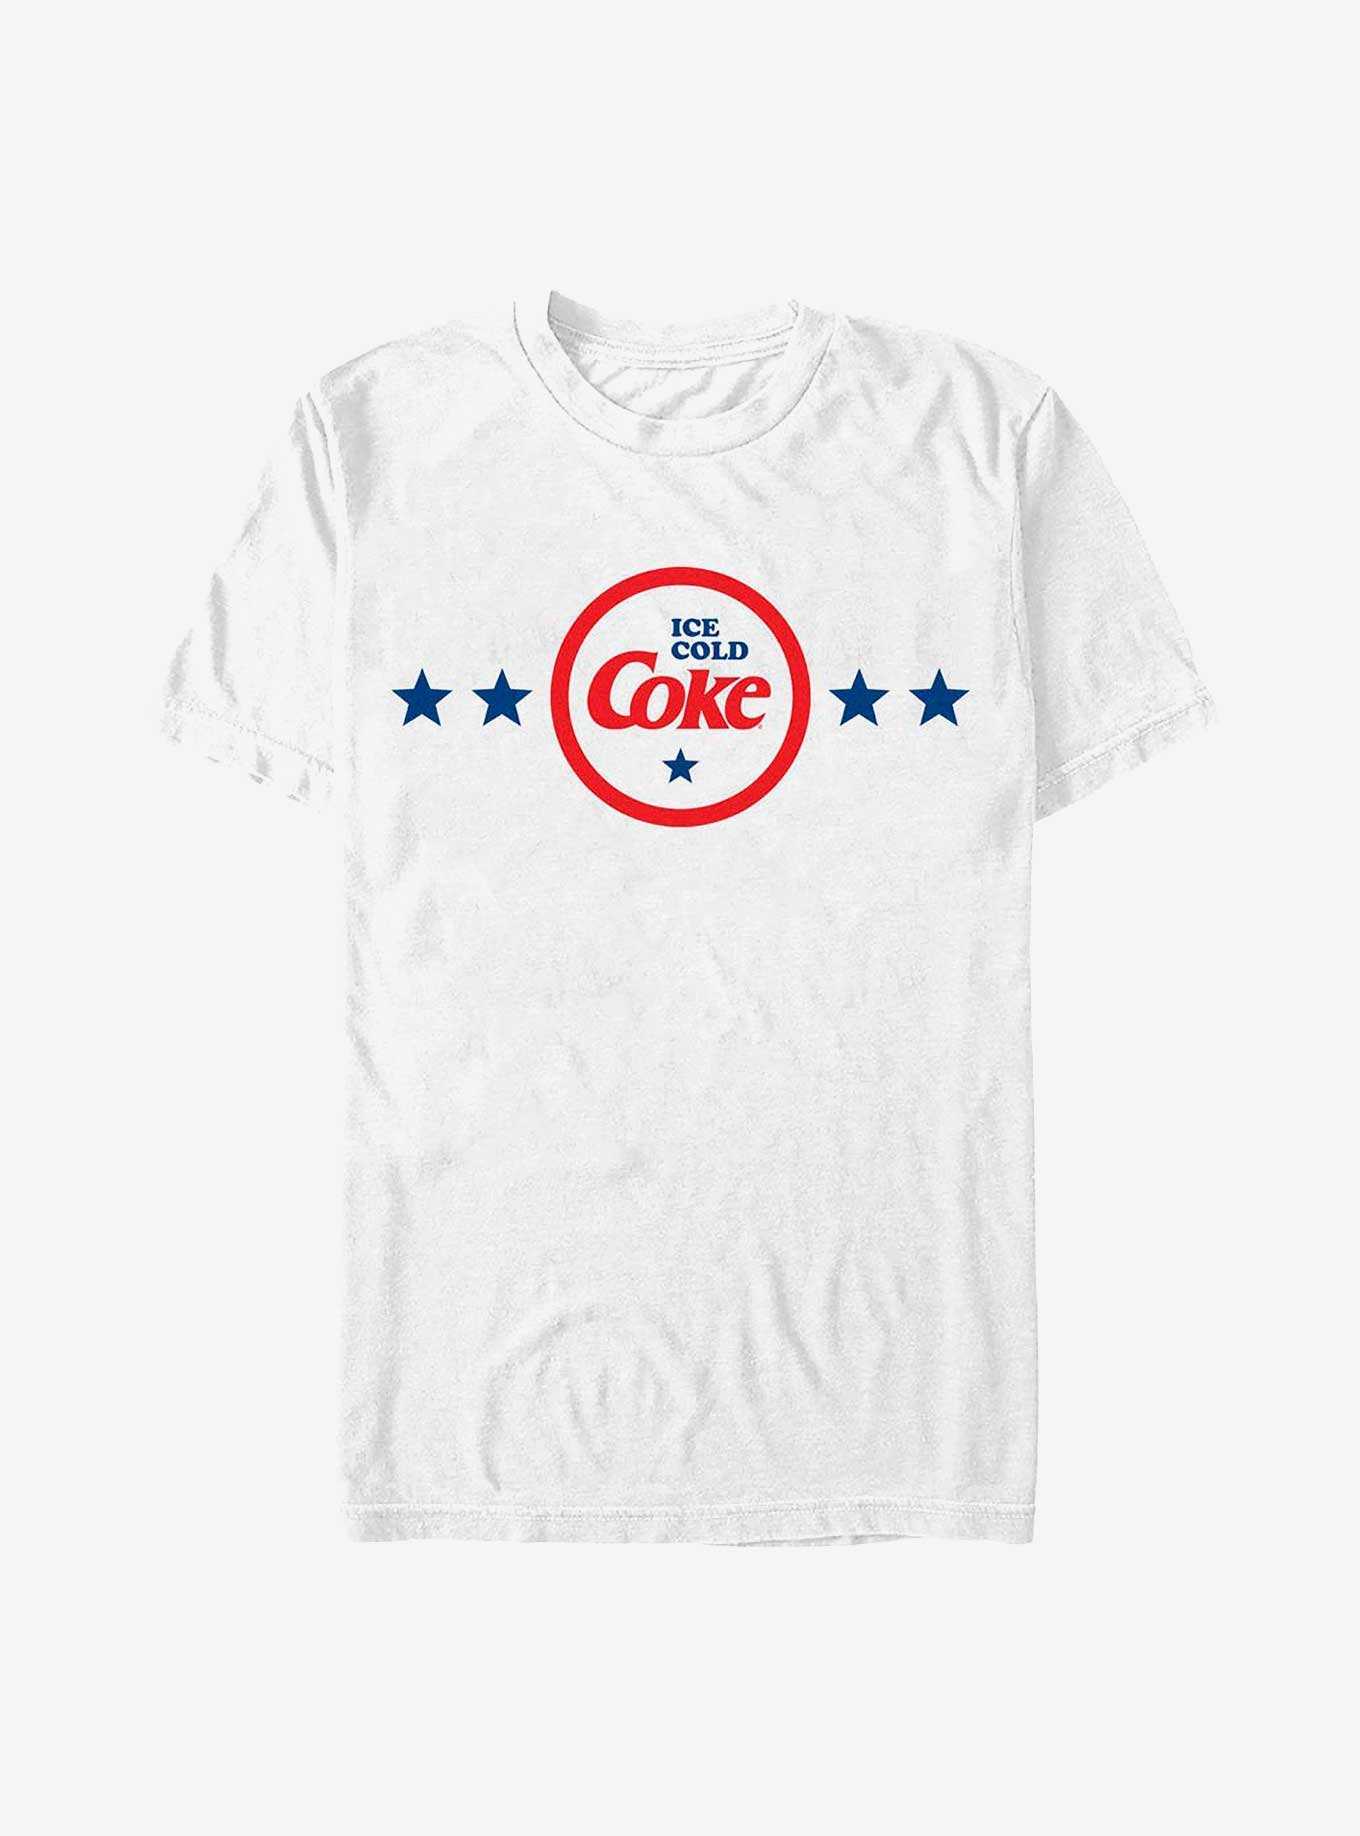 Coca-Cola Ice Cold Coke Badge T-Shirt, , hi-res